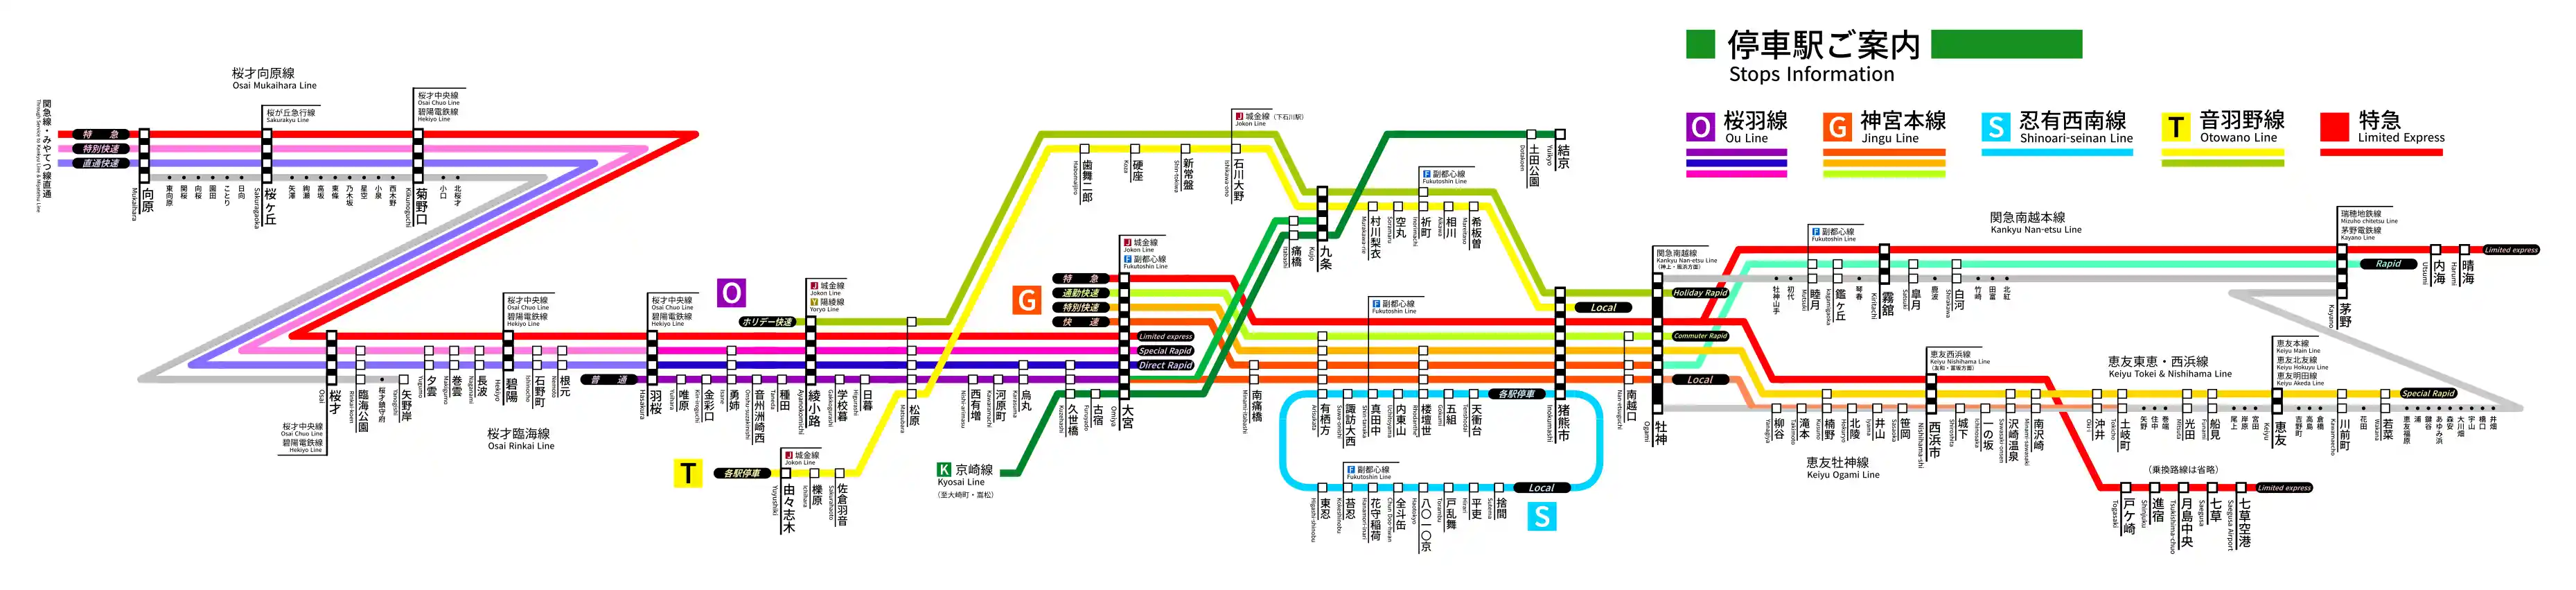 12話路線図（桜羽線系統）wiki.png